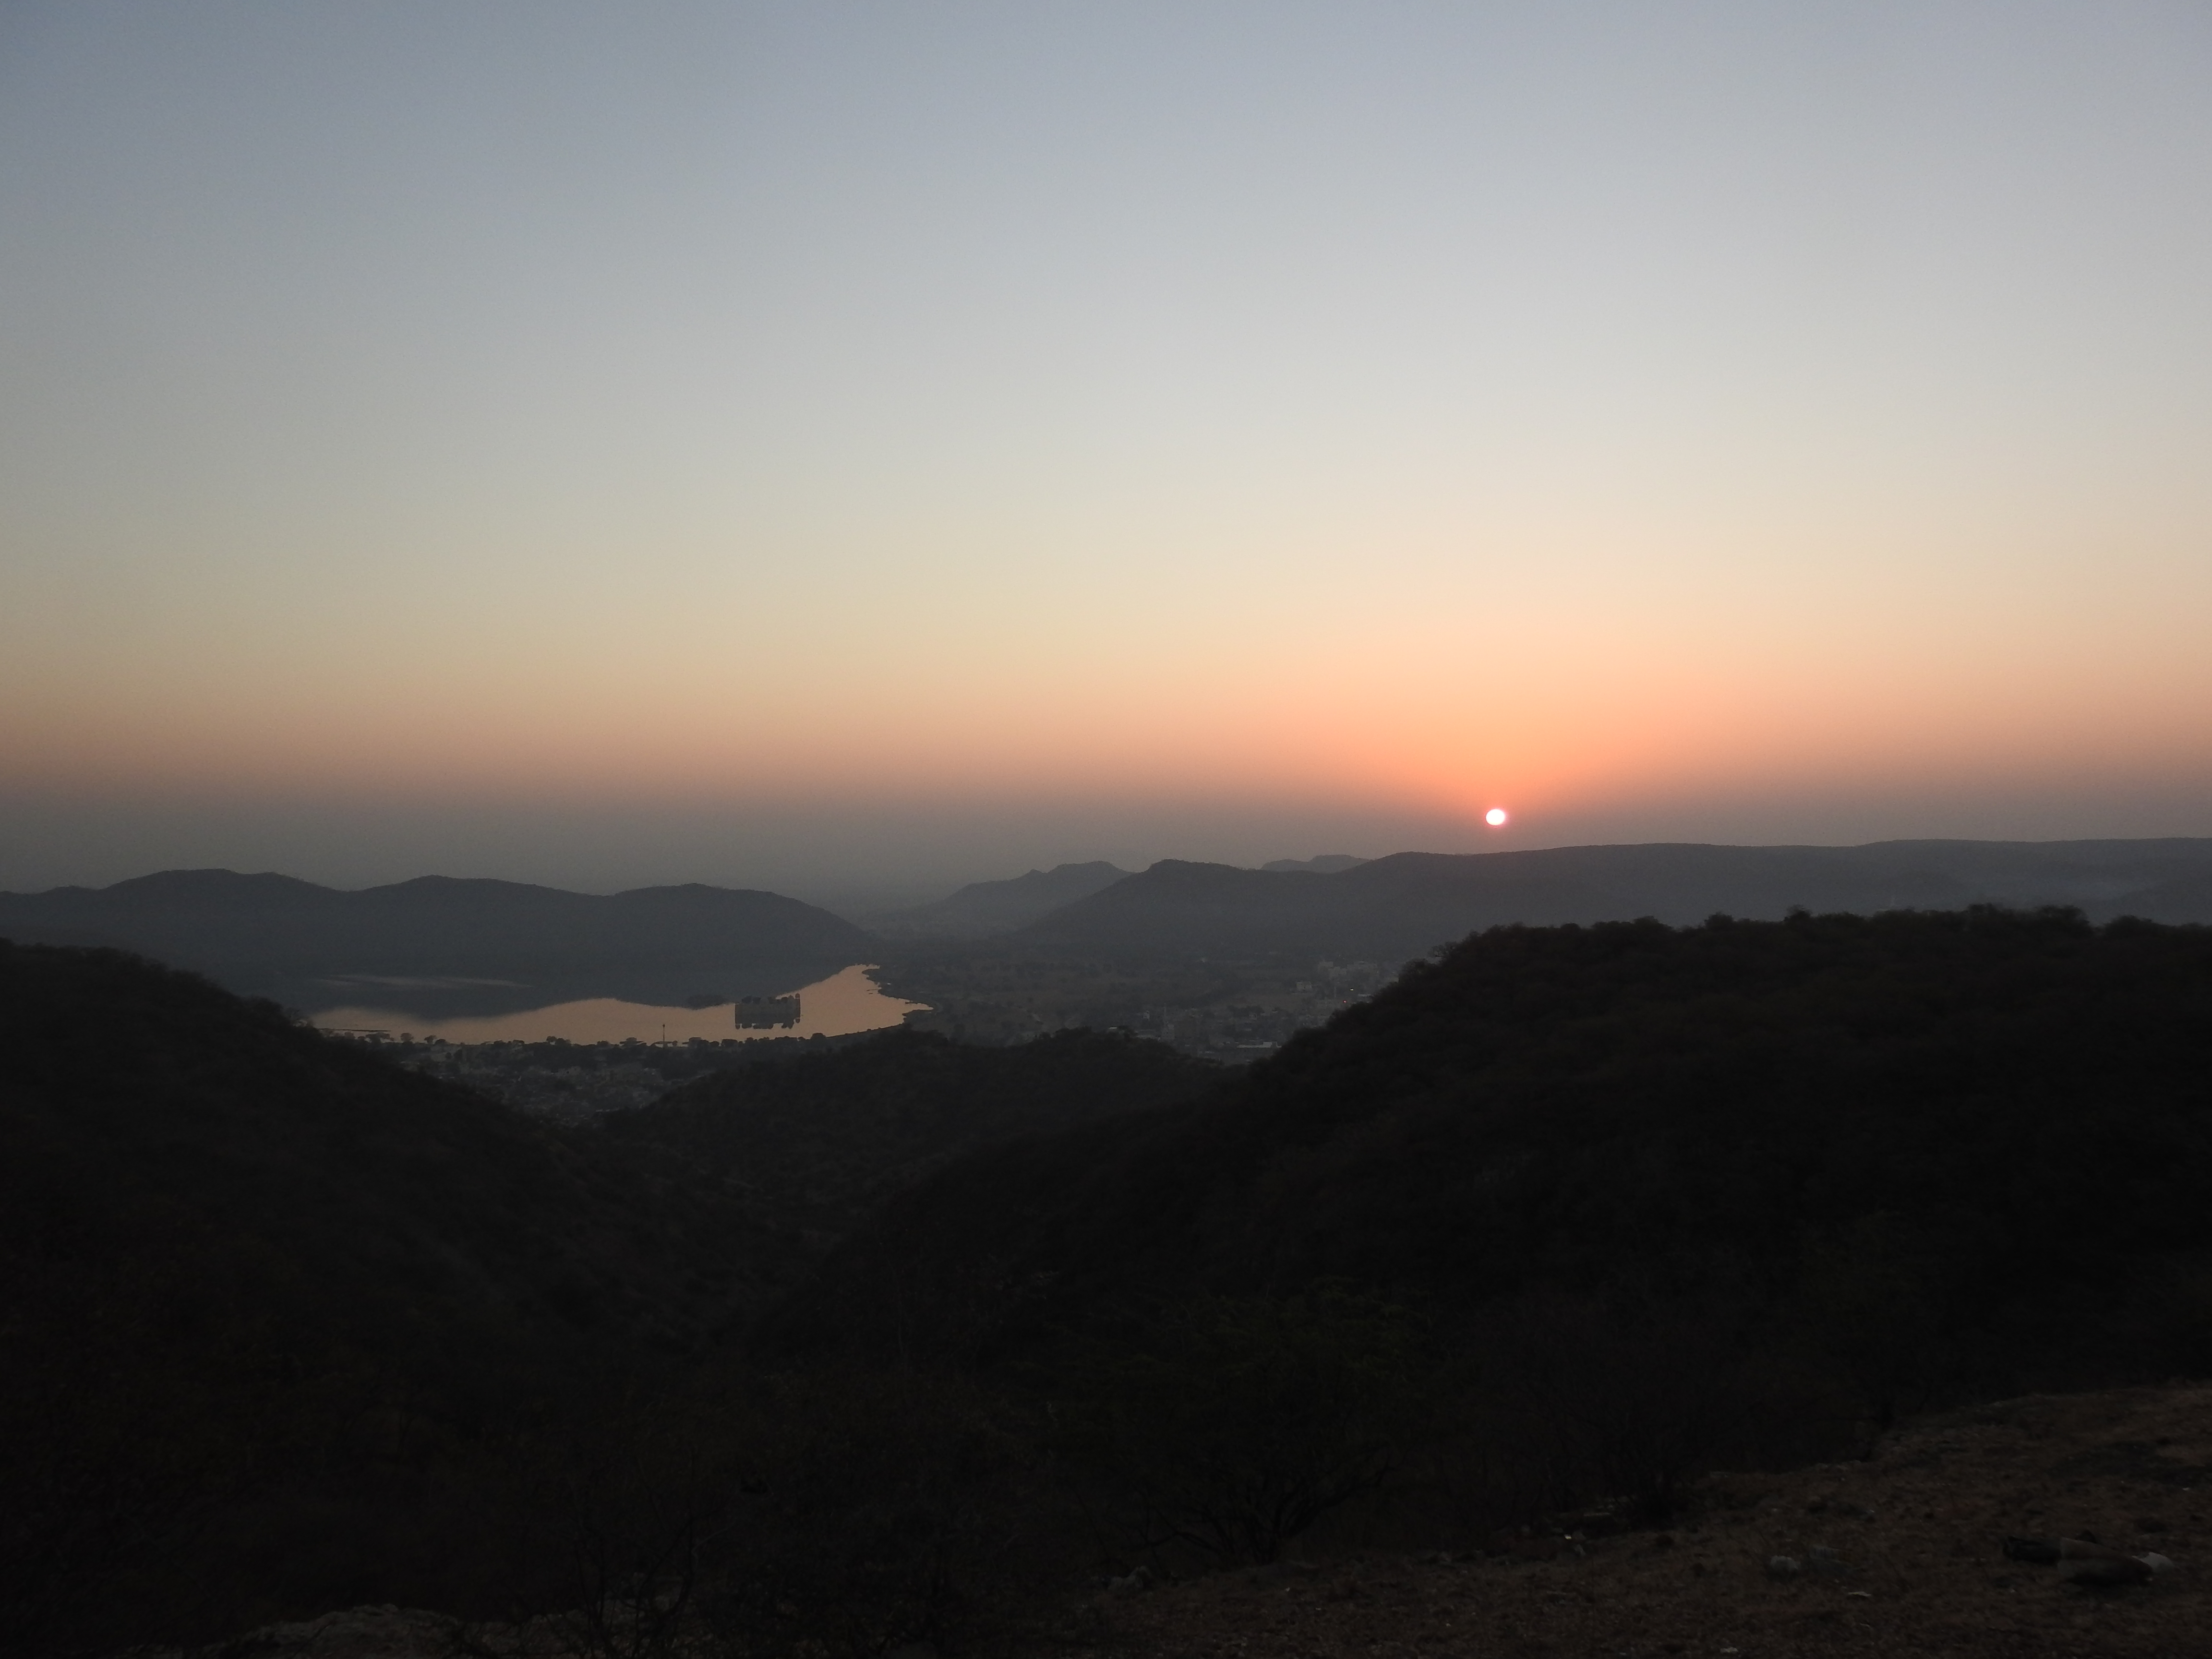 Sunrise at Nahargarh